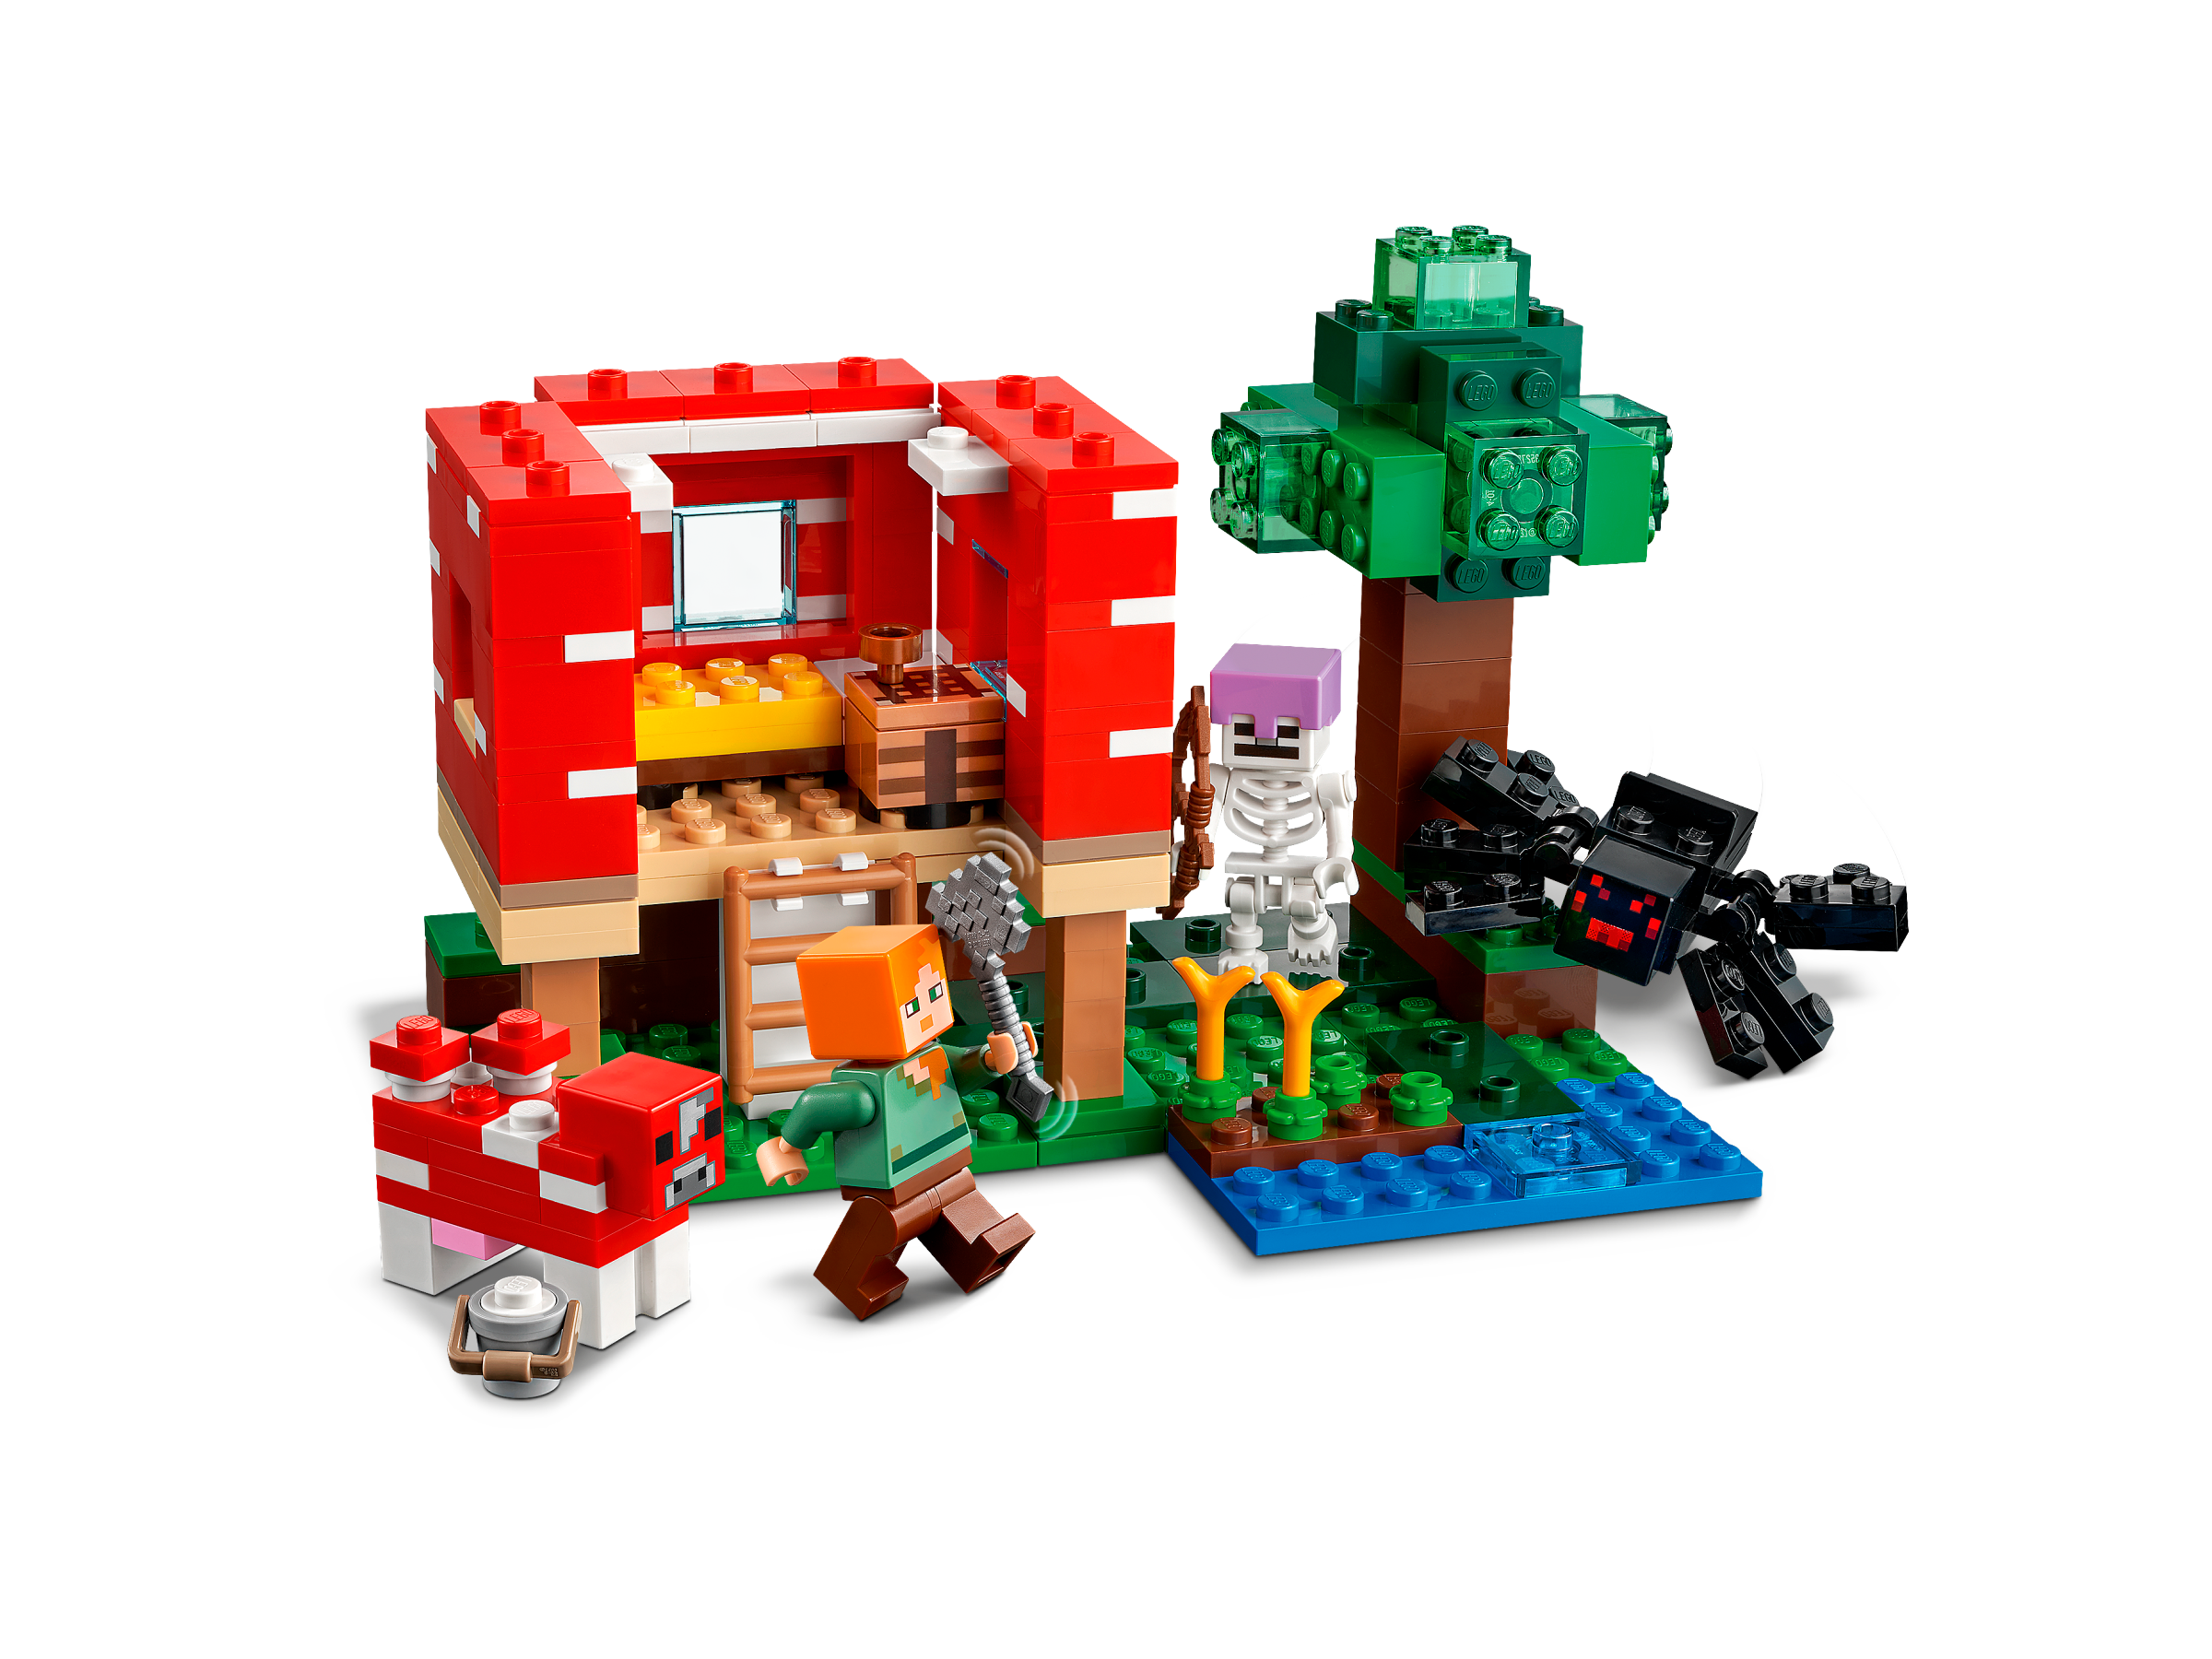 La maison champignon LEGO Minecraft 21179 - La Grande Récré